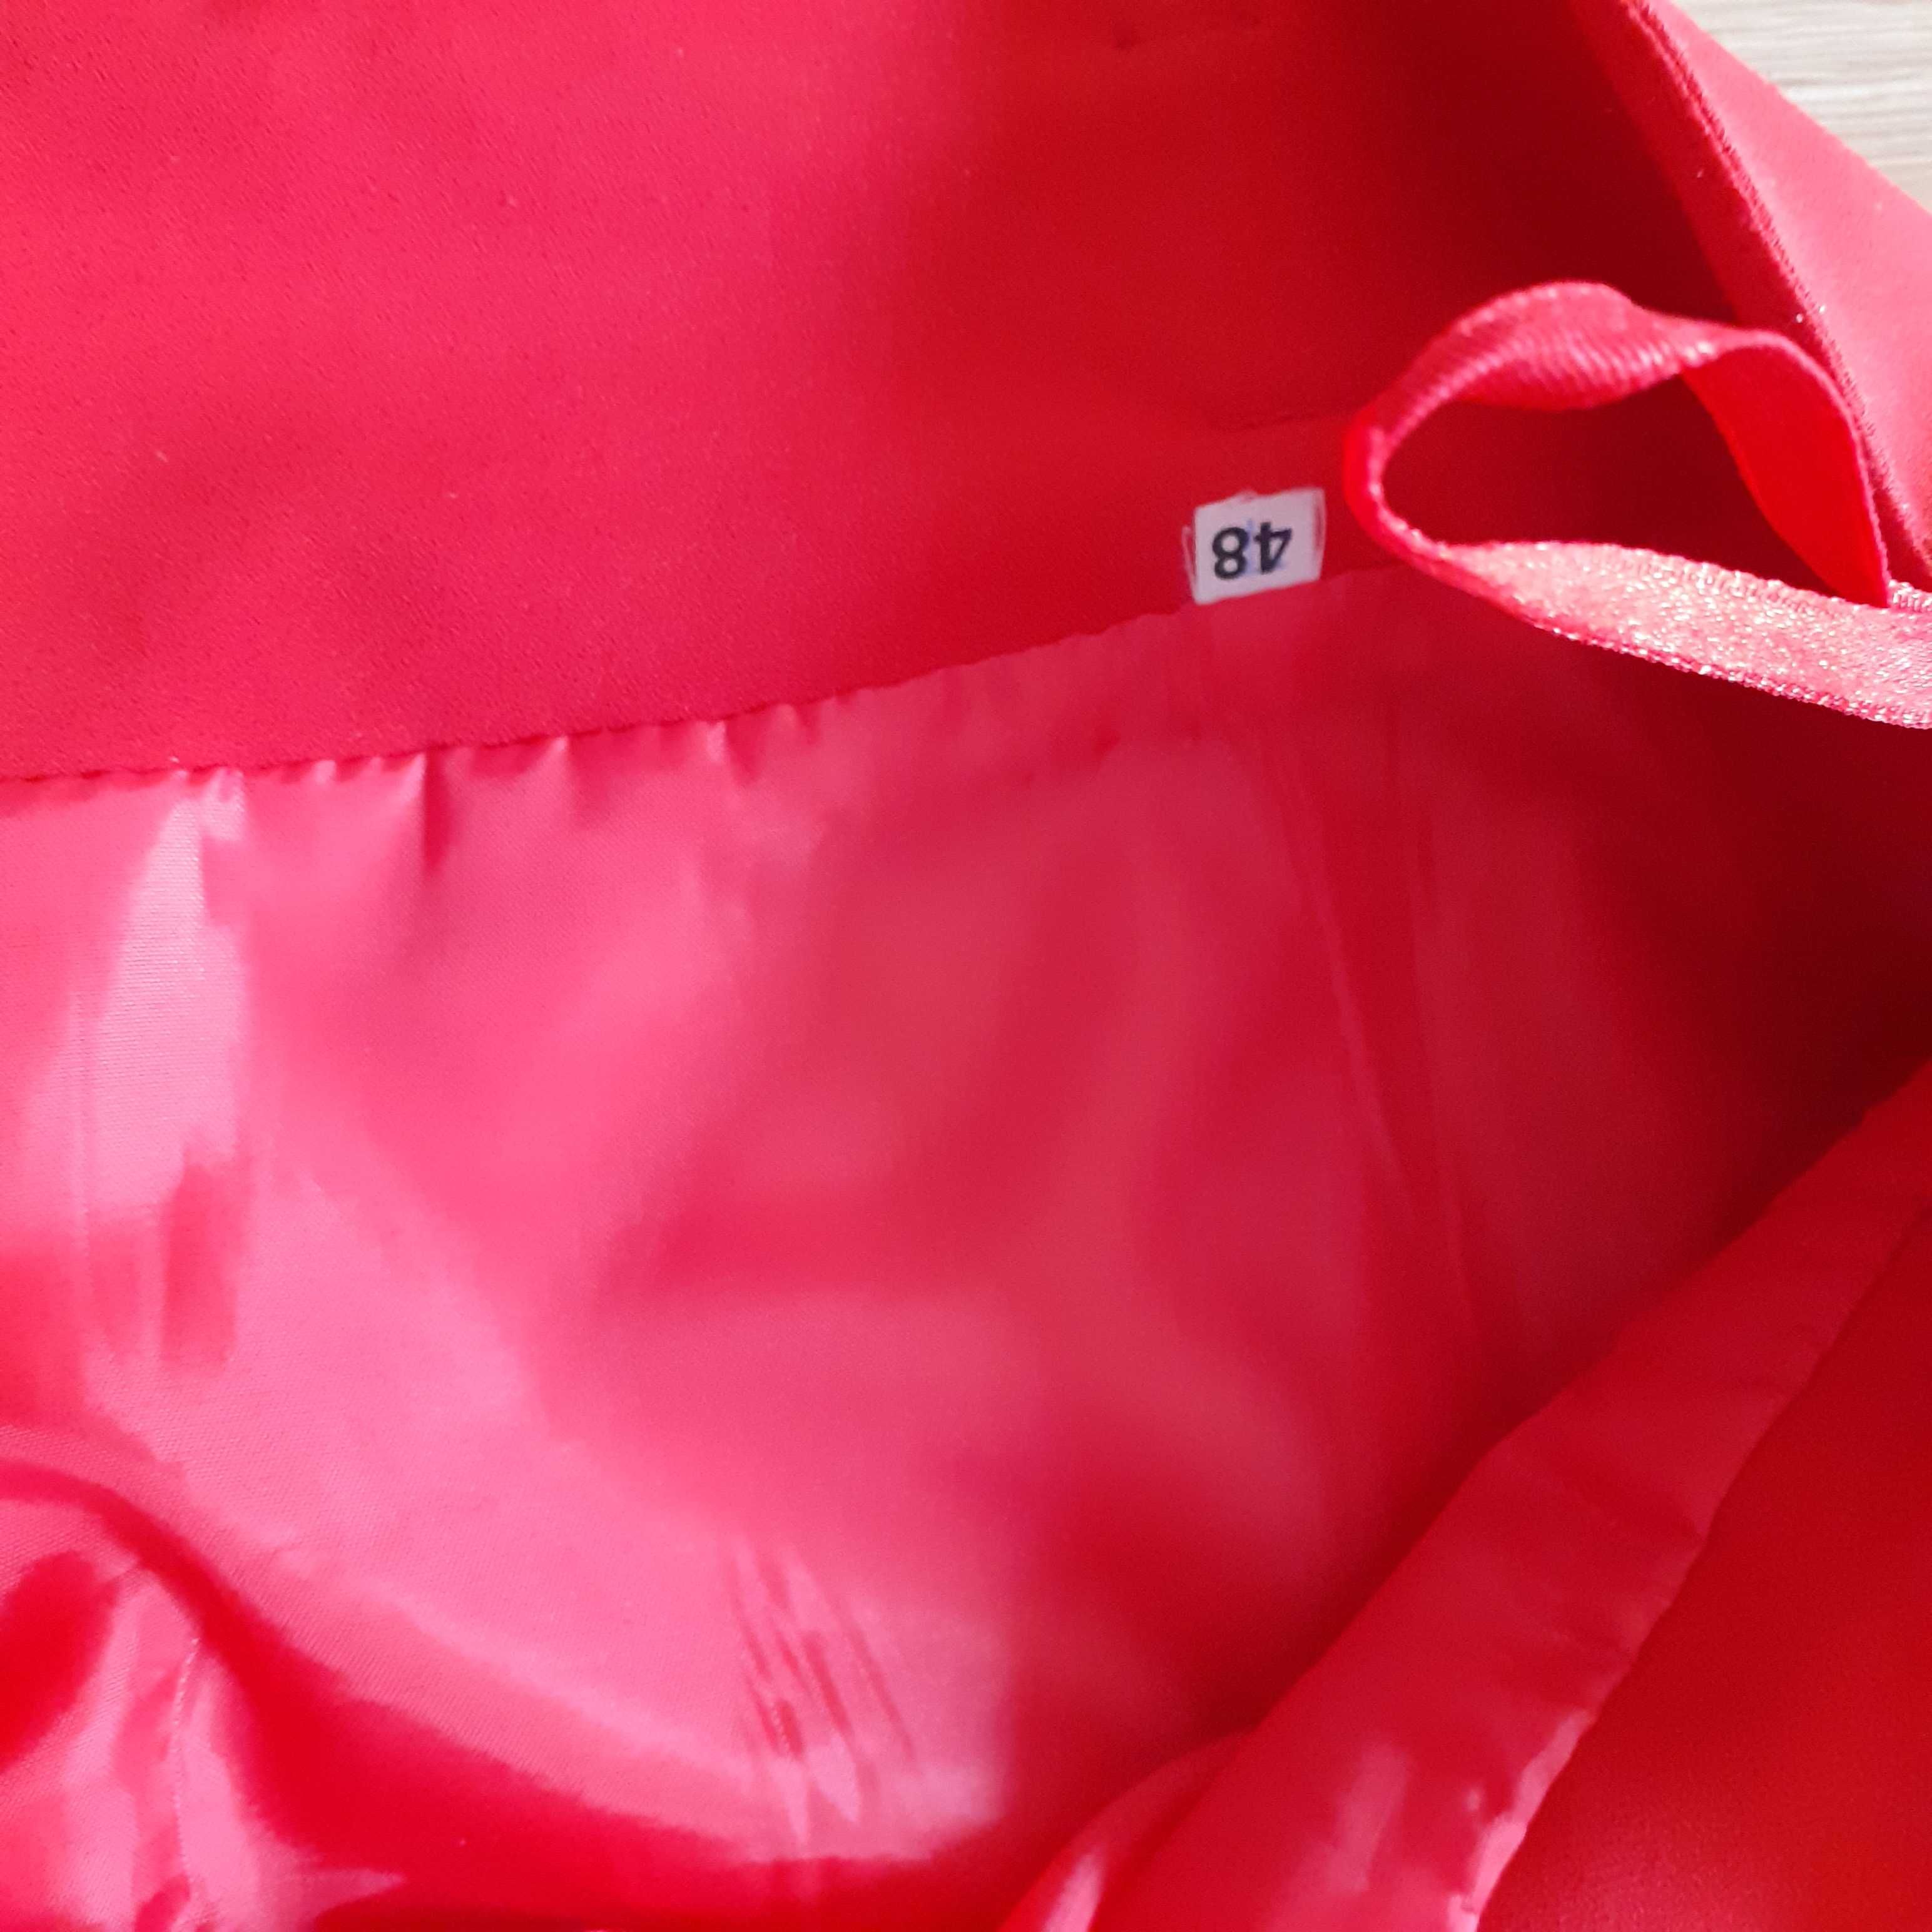 Spódnica spódnice czerwona r.48